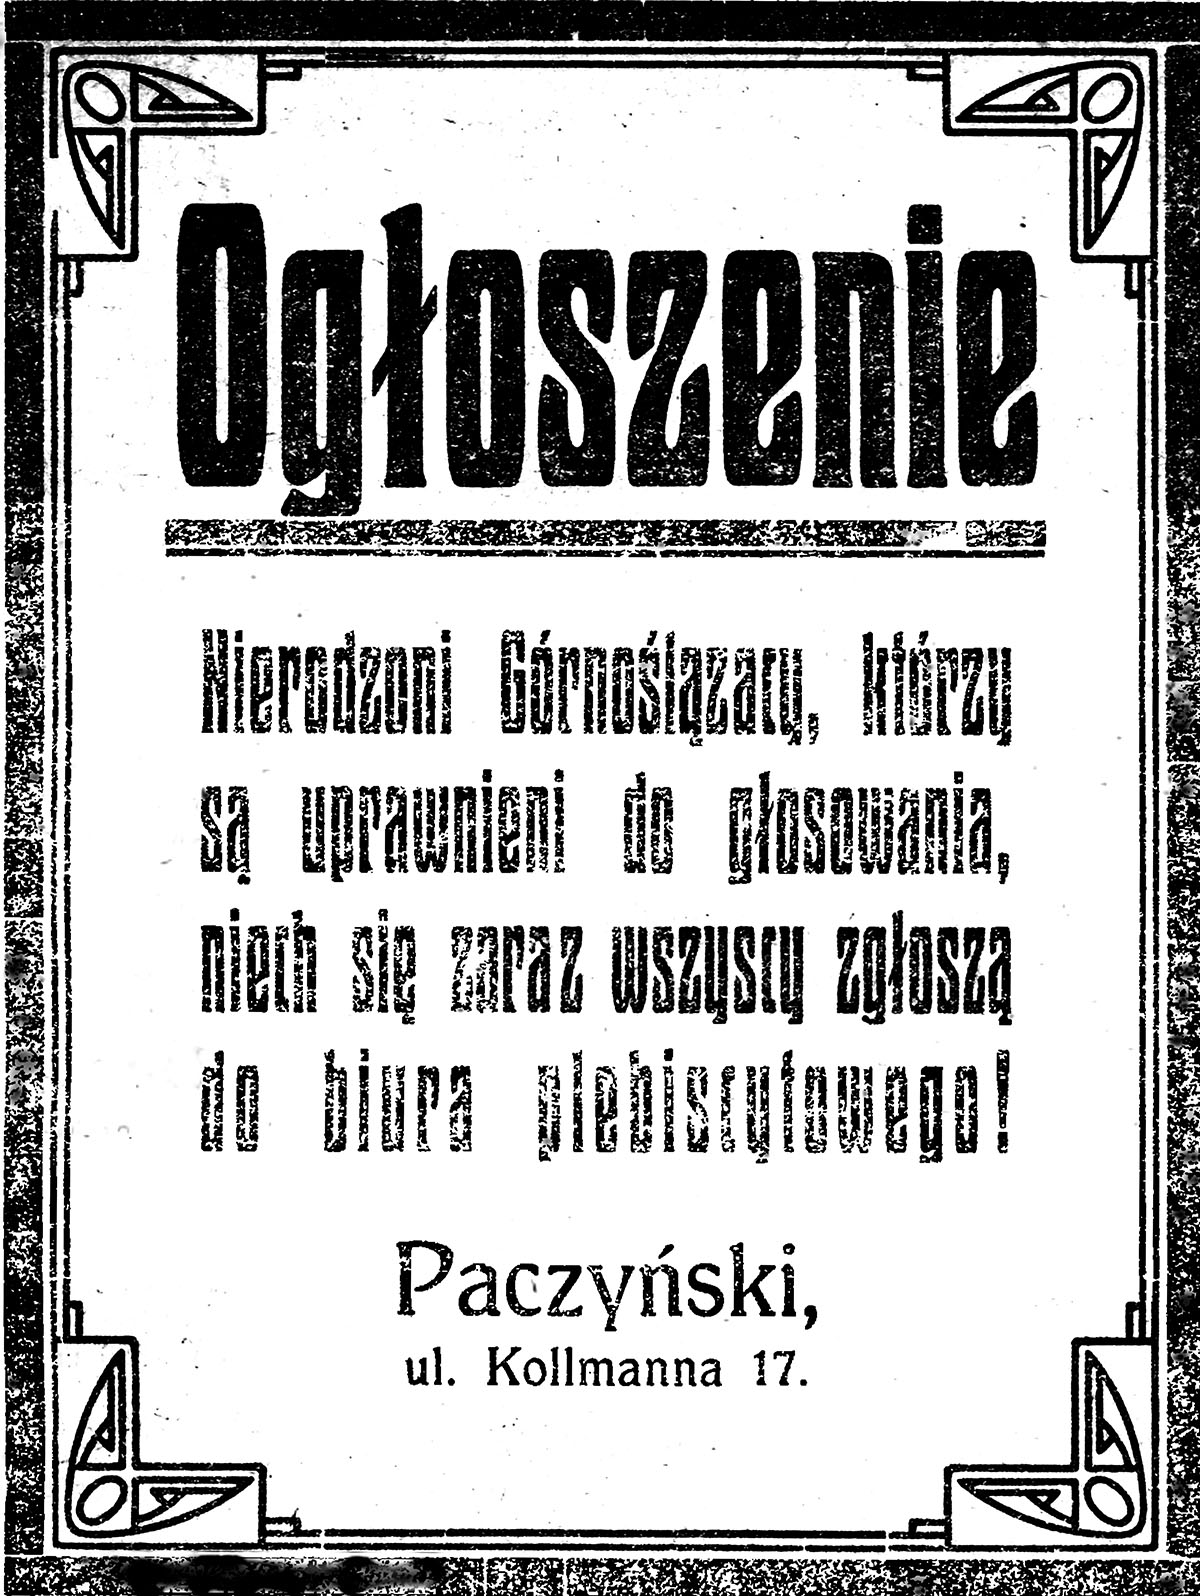 Ogłoszenie w „Bismarckhütter Zeitung” (nr 6/1921), 20 stycznia 1921 r. Źródło: Śląska Biblioteka Cyfrowa